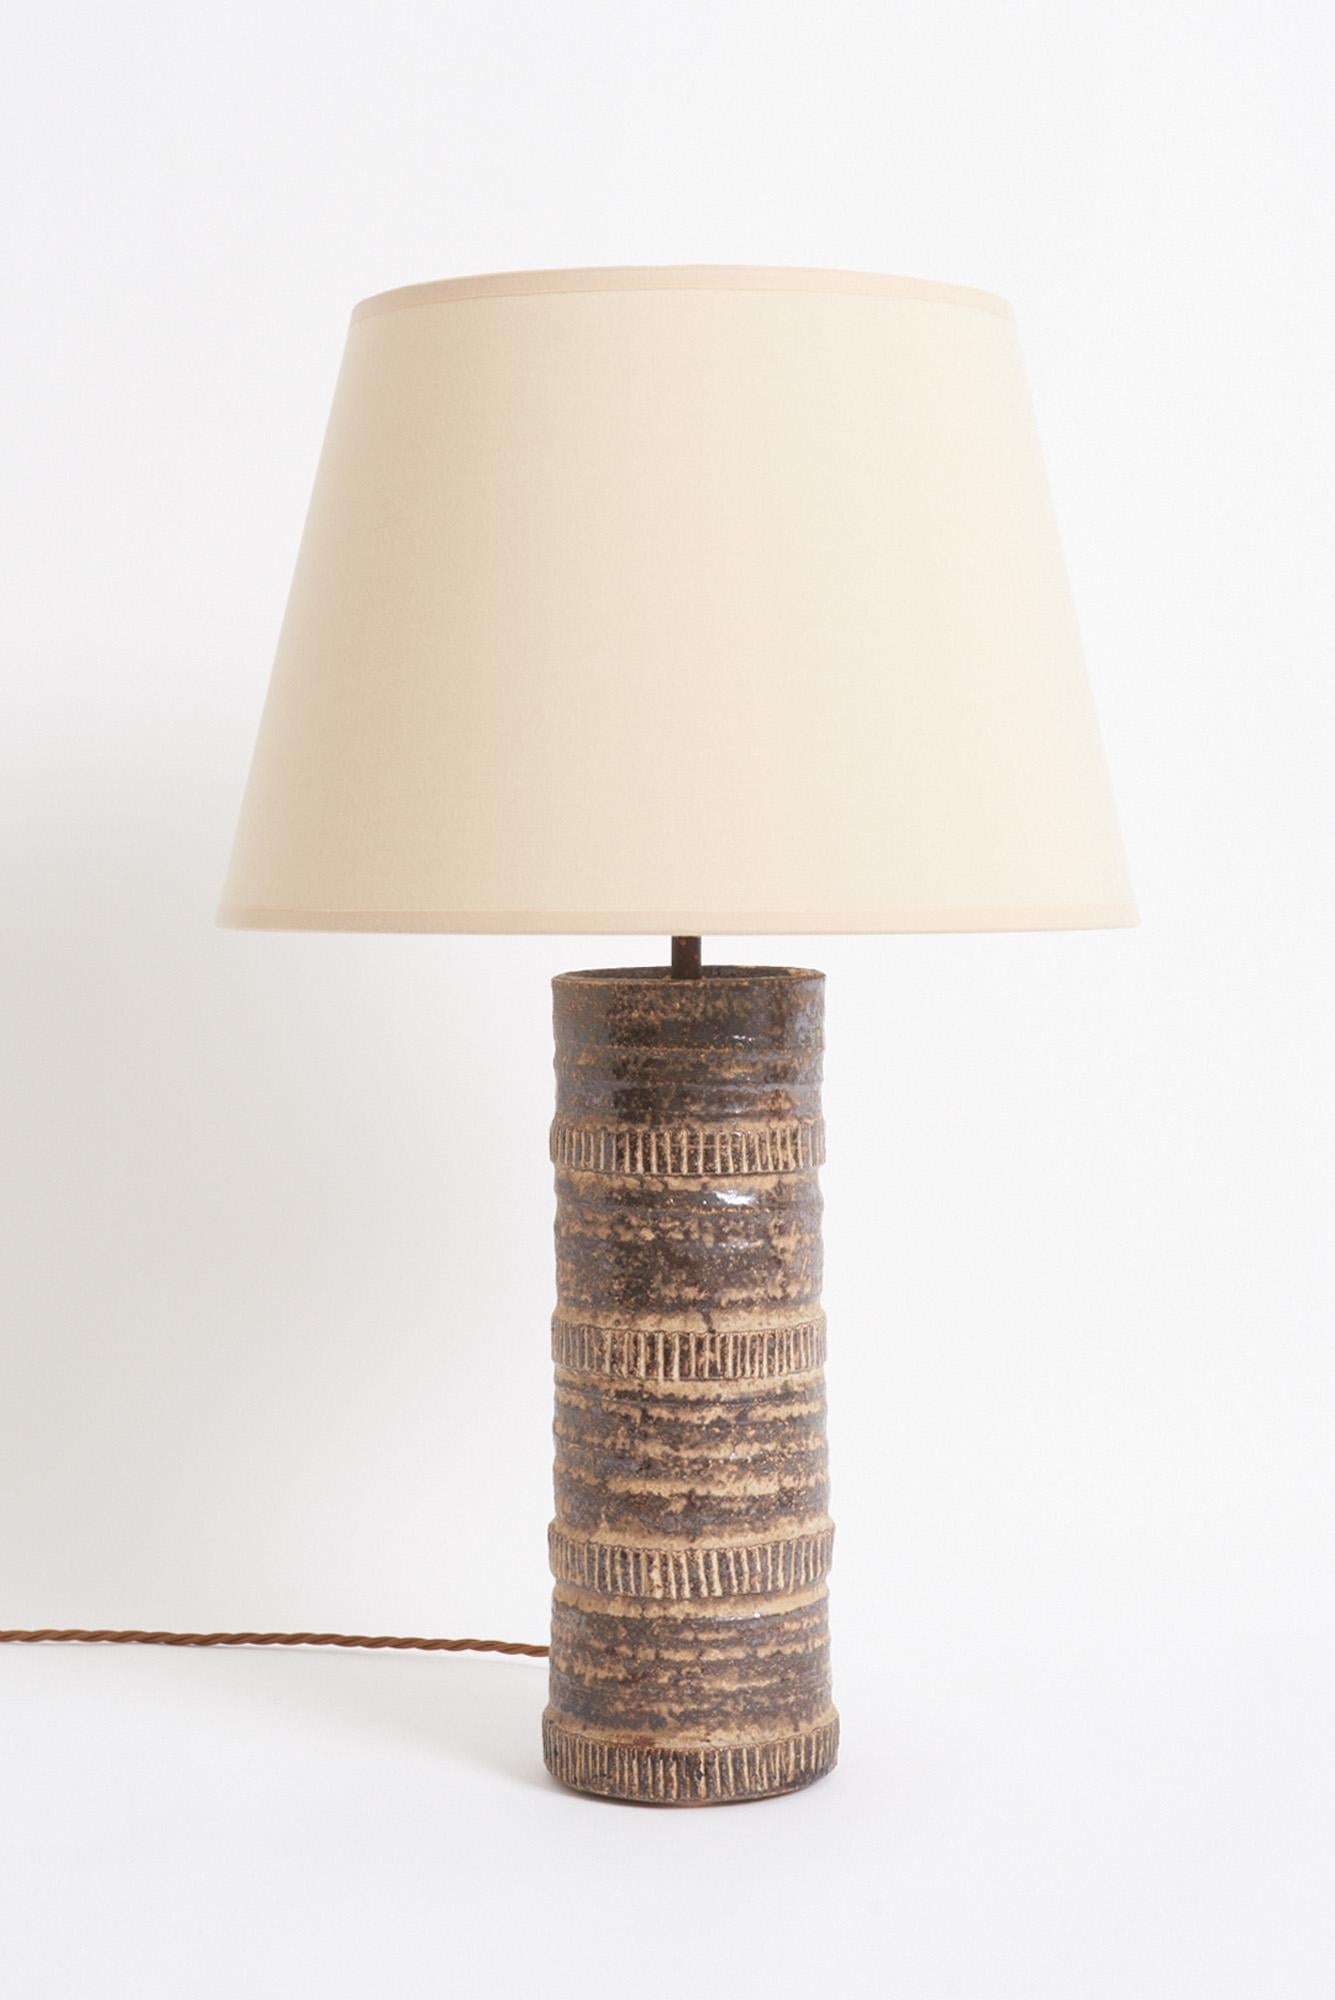 Lampe de table en céramique texturée
France, milieu du 20e siècle
Avec l'abat-jour : 58 cm de haut par 35,5 cm de diamètre 
Base de la lampe uniquement : 39,5 cm de haut par 11 cm de diamètre